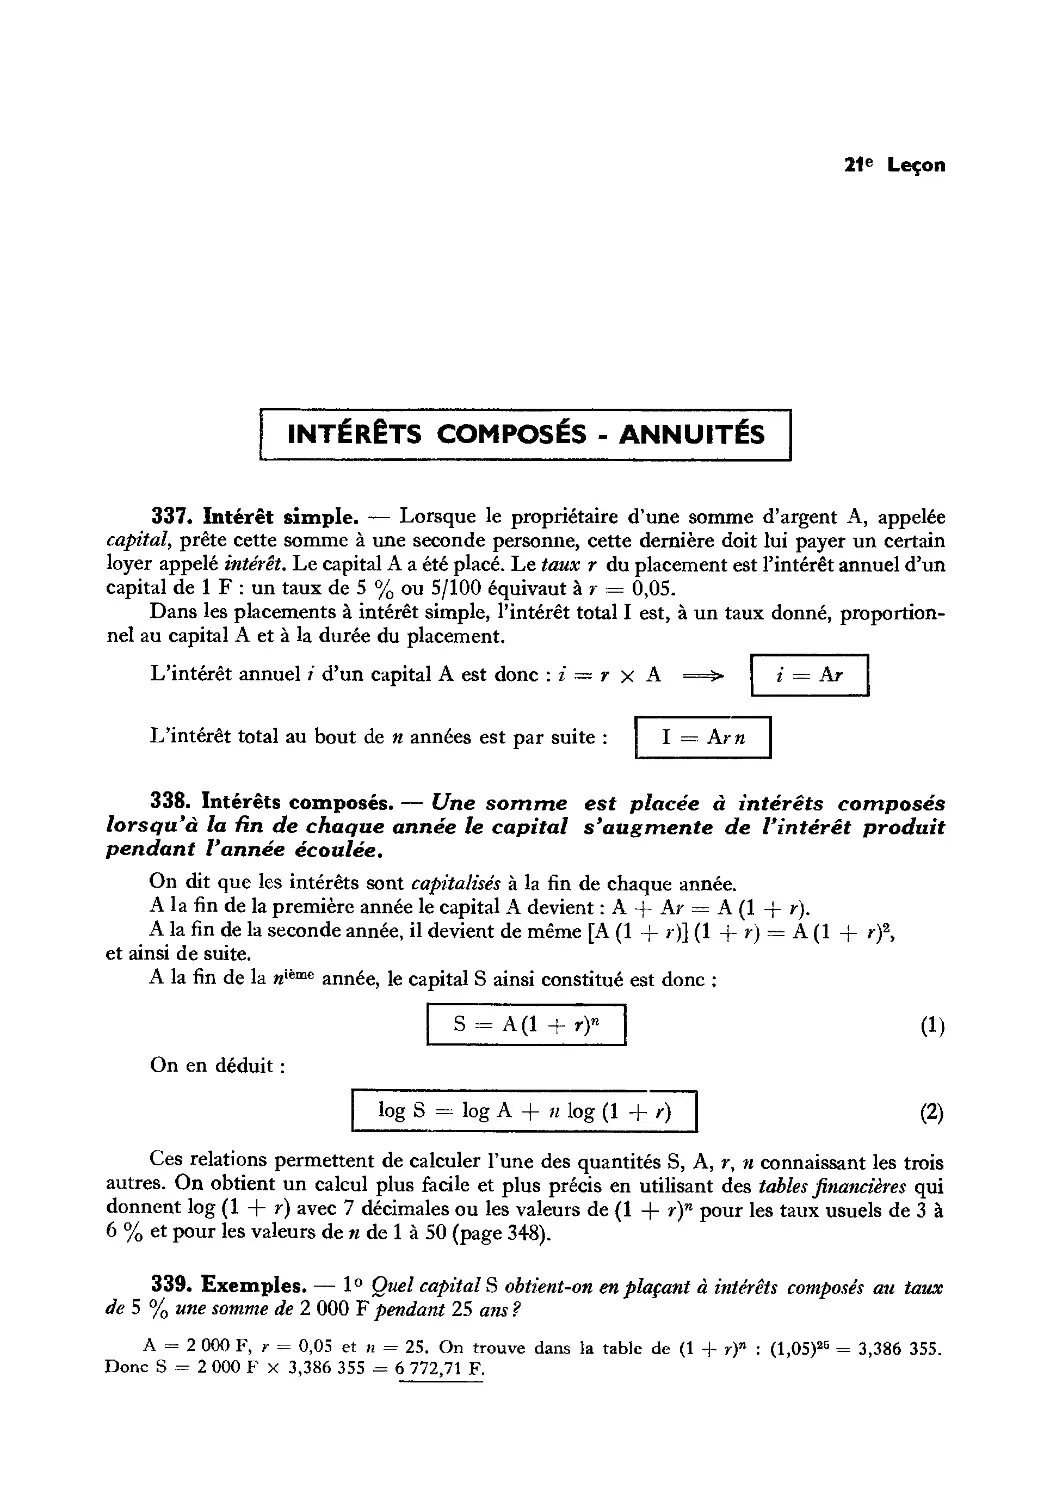 Leçon 21 — Intérêts composés — Annuités — Échelles logarithmiques
338. Intérêts composés
339. Exemples